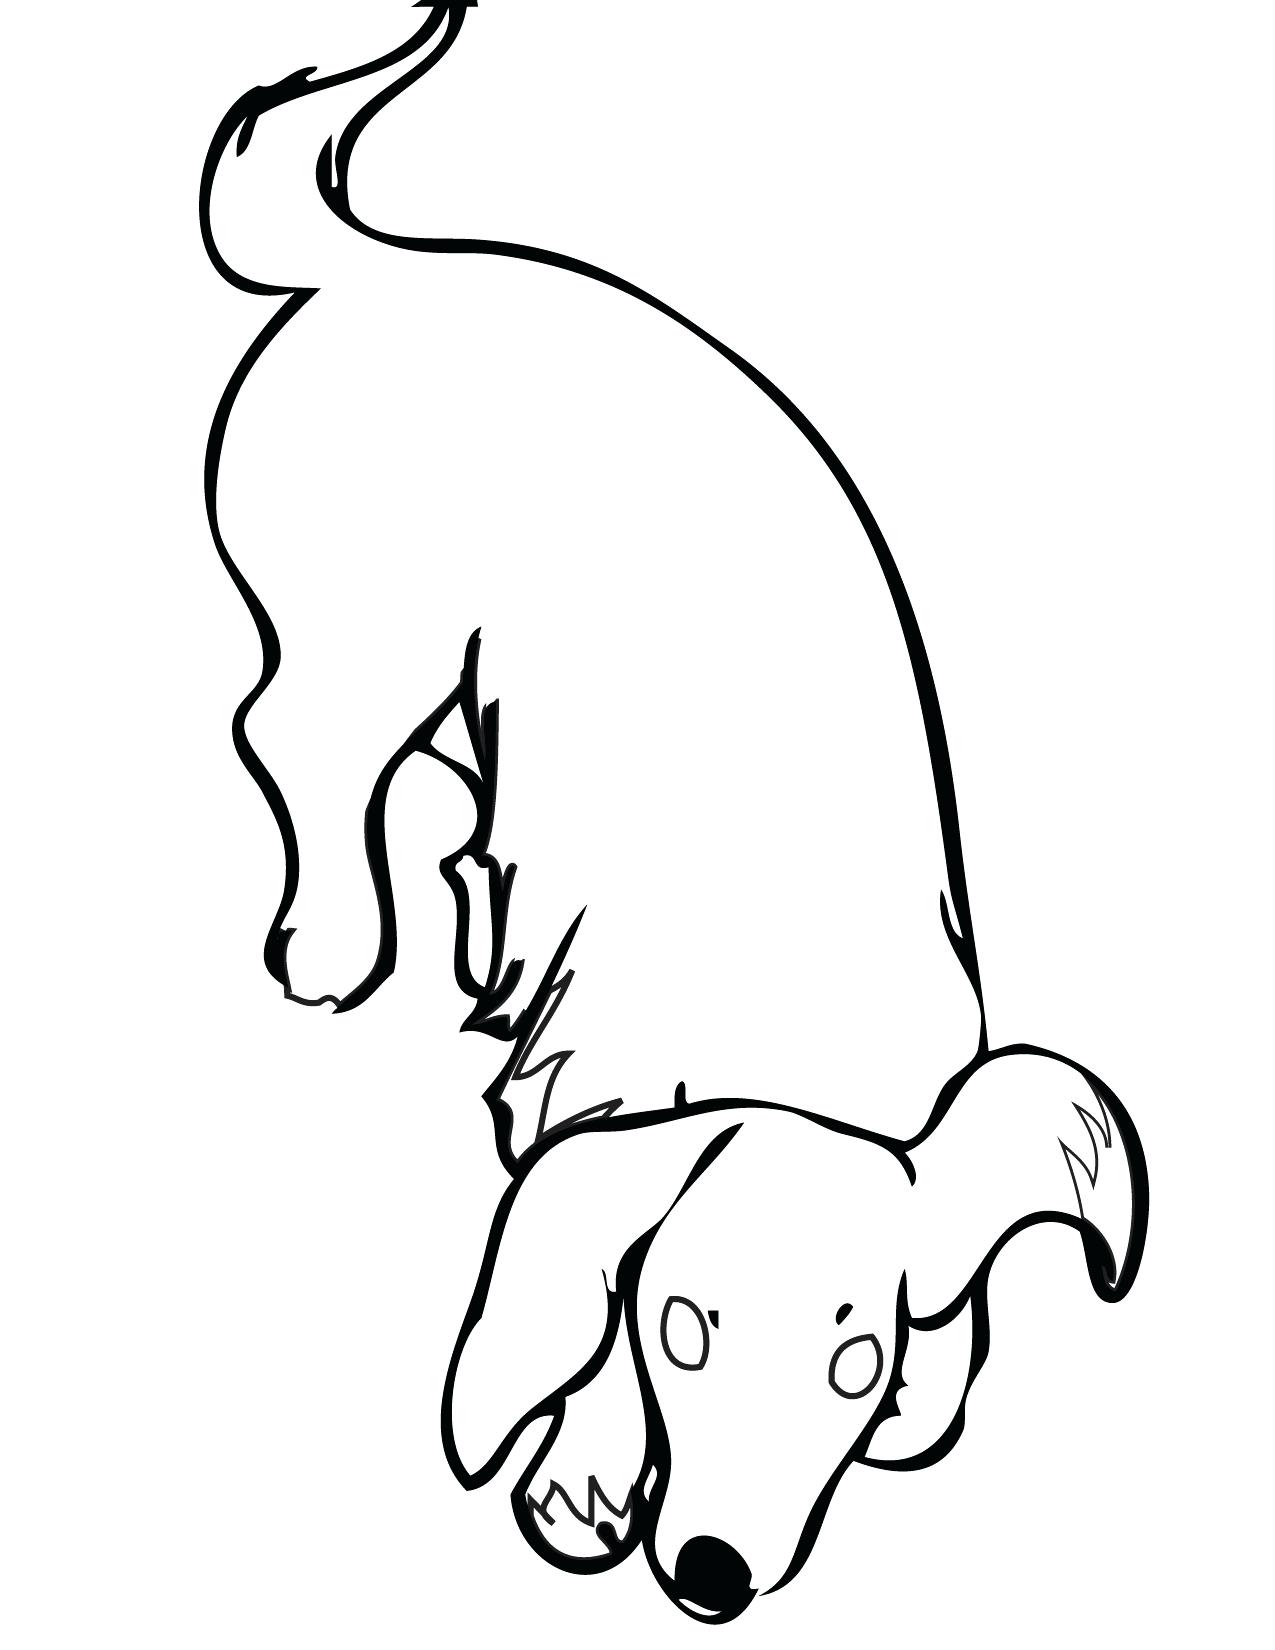 Weenie Dog Drawing at GetDrawings | Free download